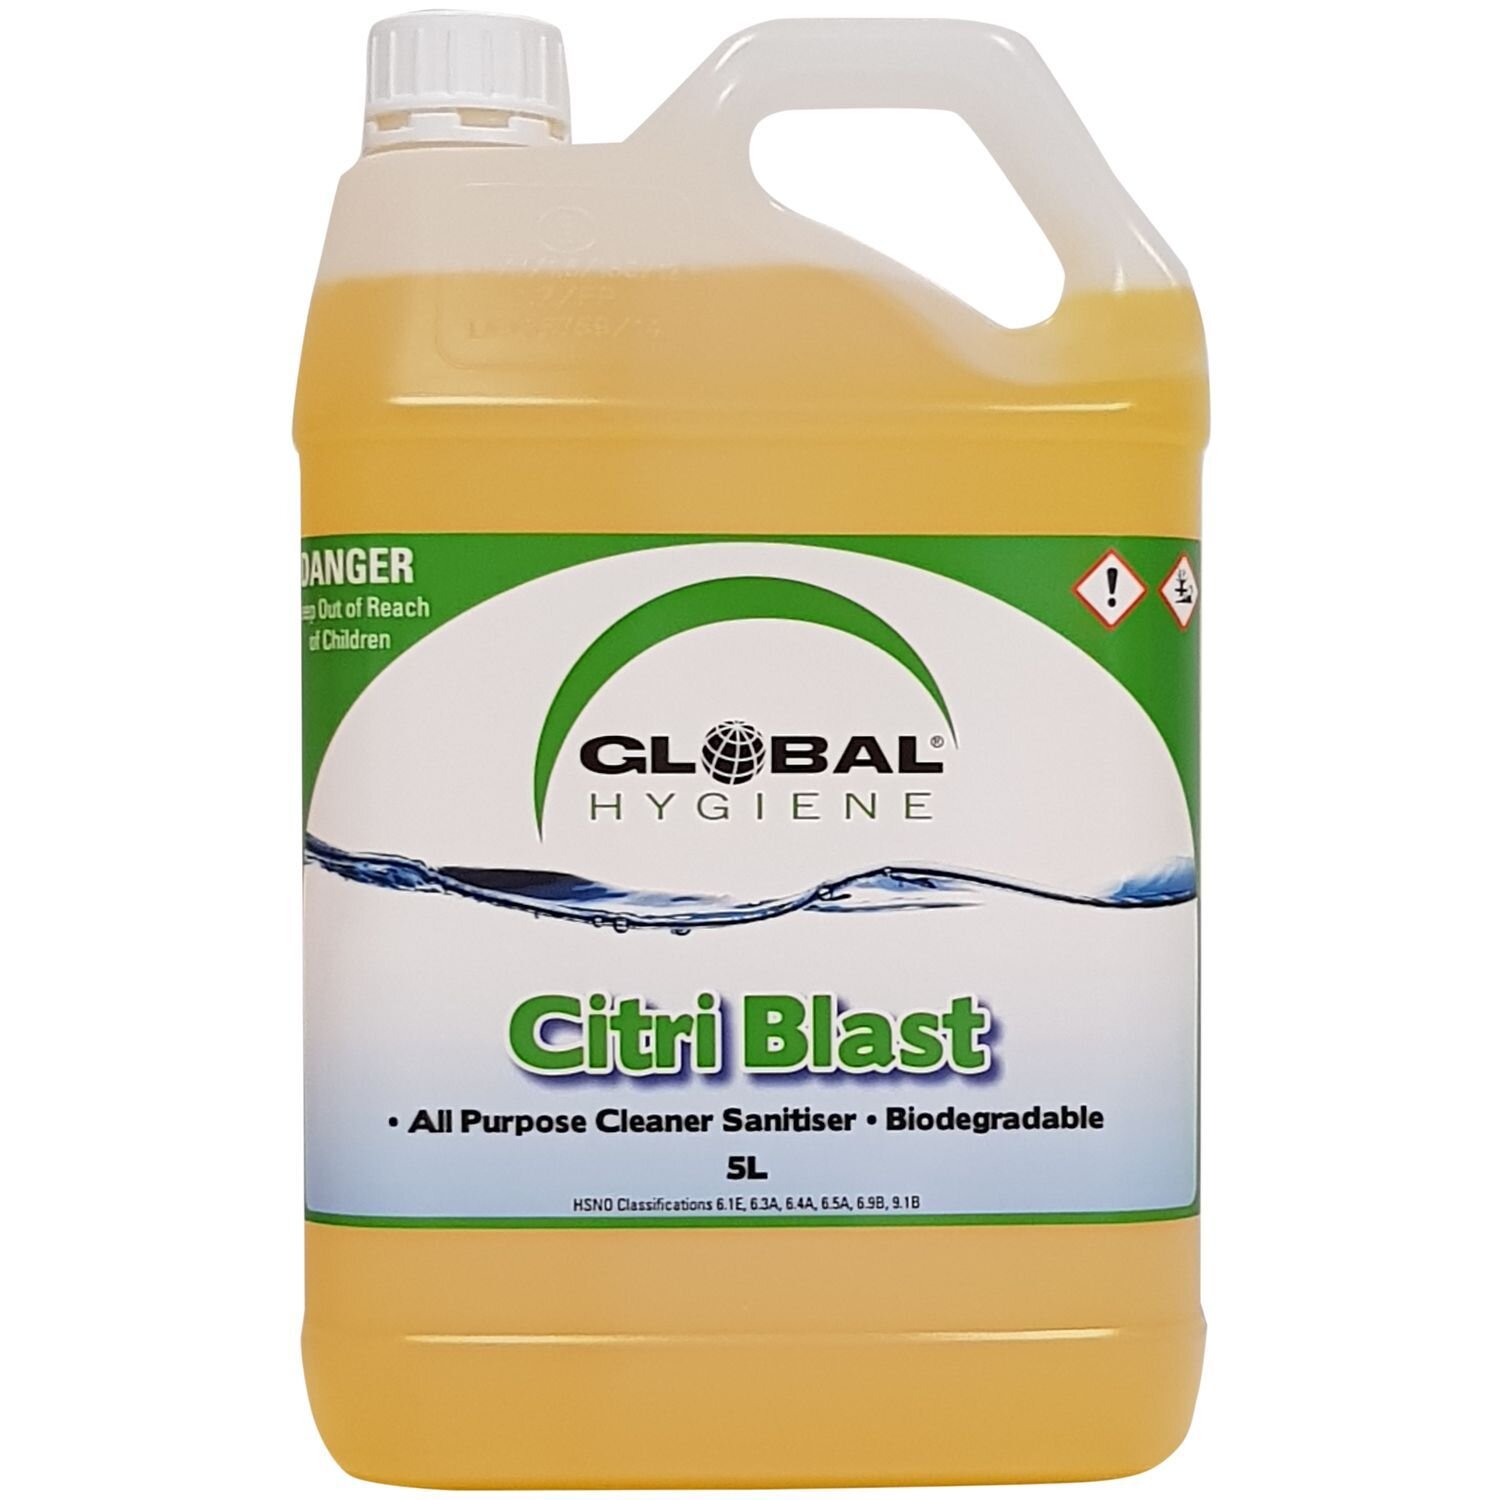 Global Citri Blast Cleaner Degreaser Sanitiser